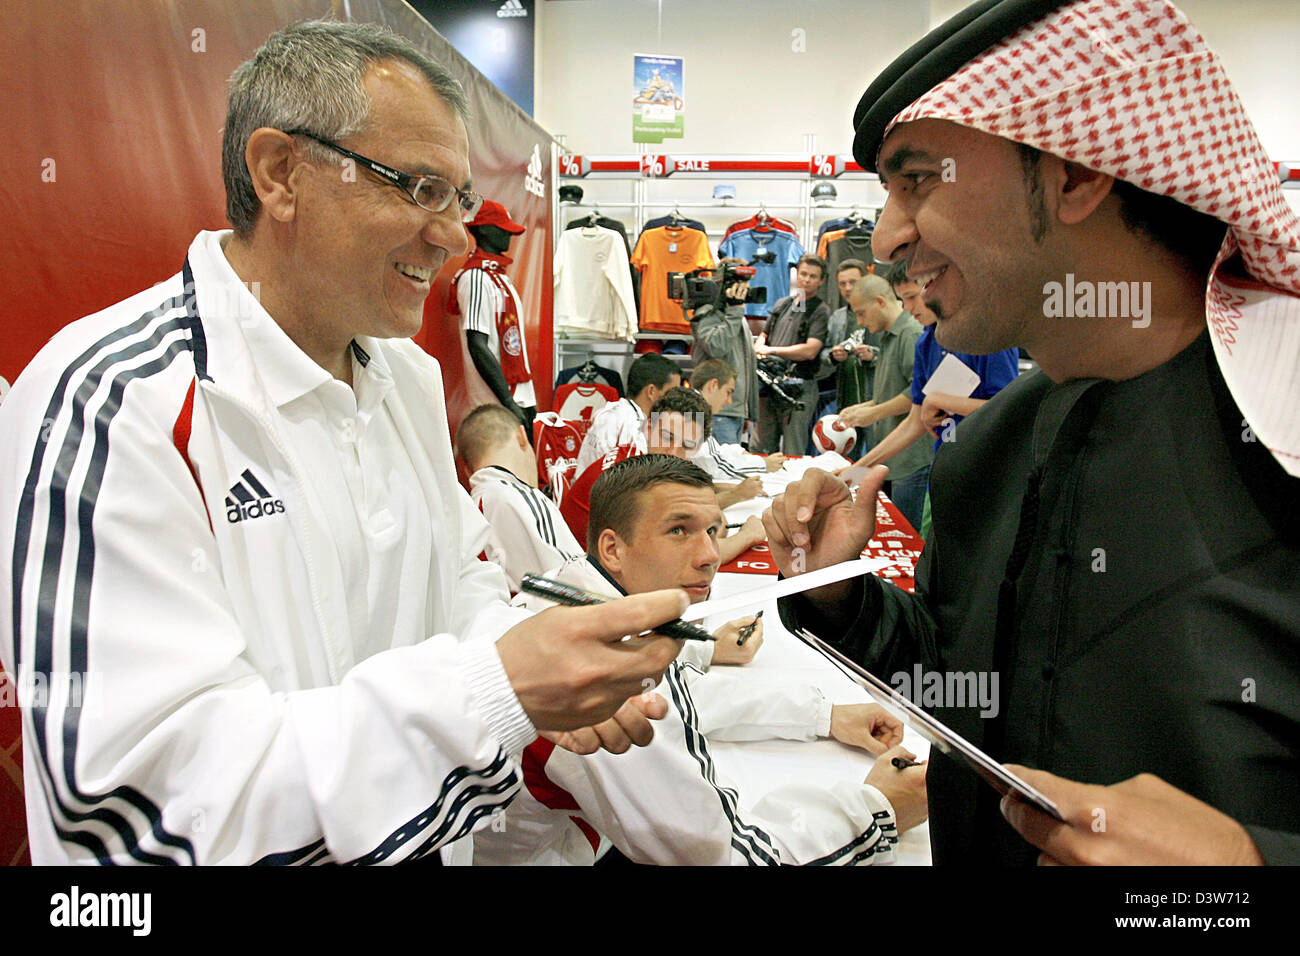 Trainer des FC Bayern München, Felix Magath (L), plaudert mit einem lokalen während einer Autogrammstunde im Adidas Store in Dubai, Vereinigte Arabische Emirate, Sonntag, 11. Januar 2207. Foto: Daniel Karmann Stockfoto